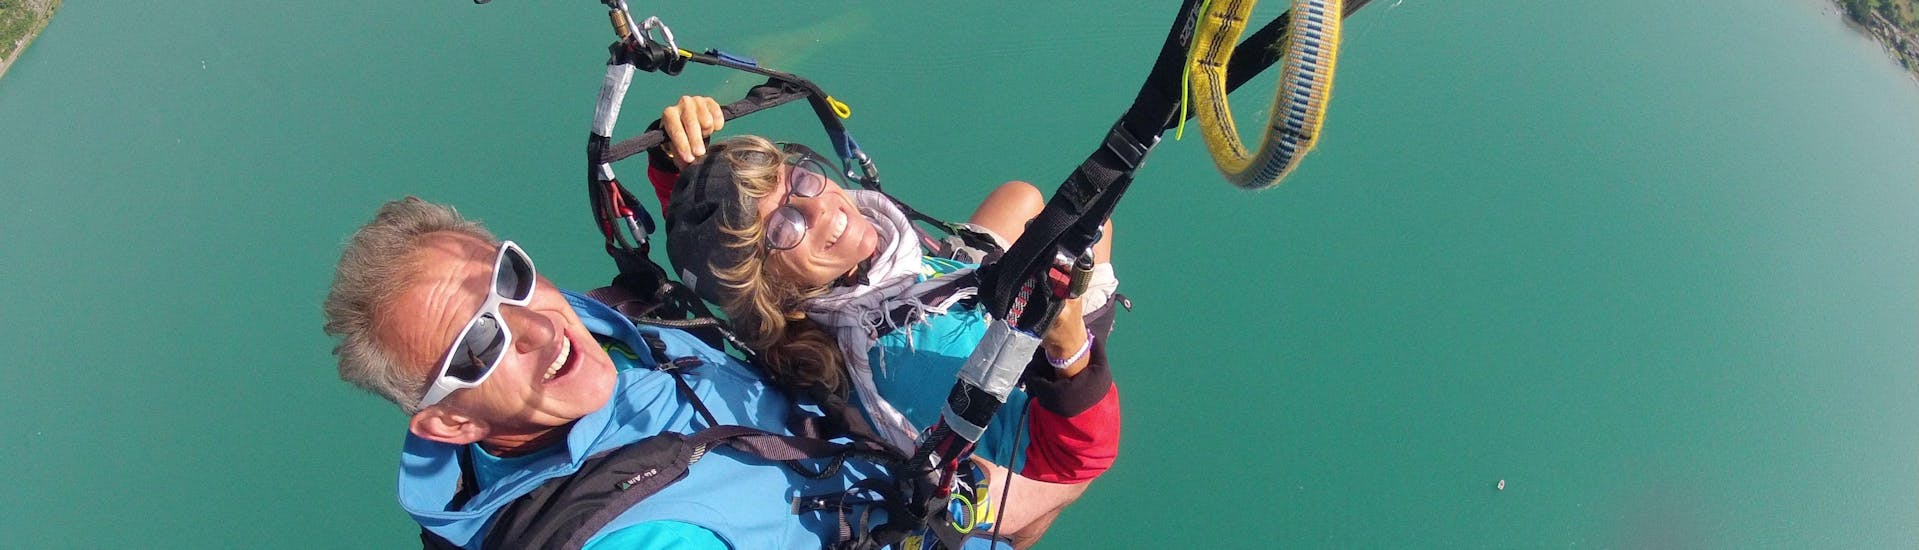 Een dame geniet van haar tandem paragliding bij het meer van Annecy - Ascendance-activiteit met FBI Parapente.